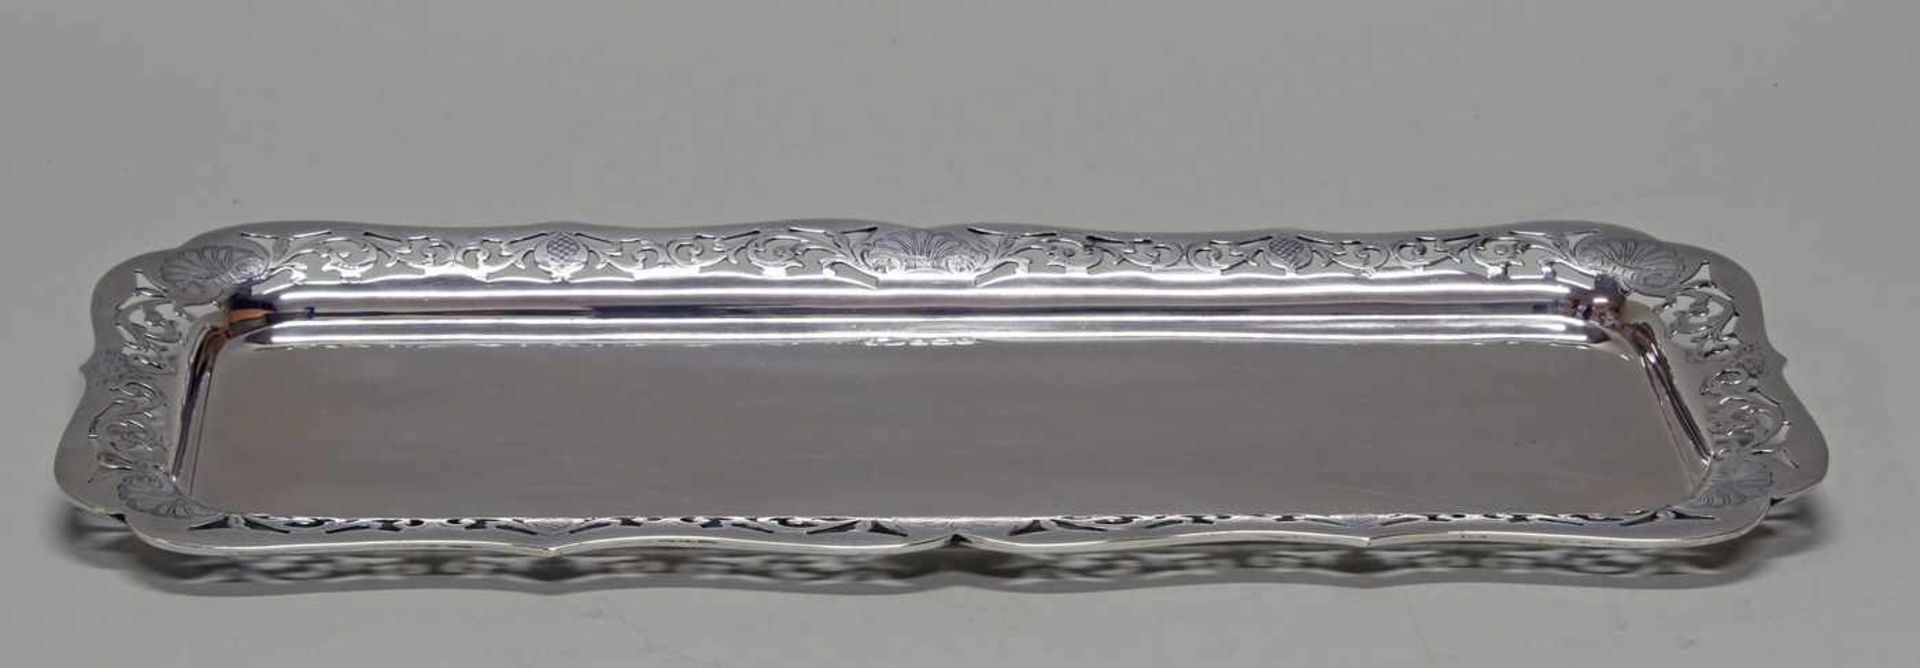 Platte, Silber 925, Birmingham, 1922, rechteckig, durchbrochener Rand mit Rankenzier, 40 x 17.5 - Image 2 of 4